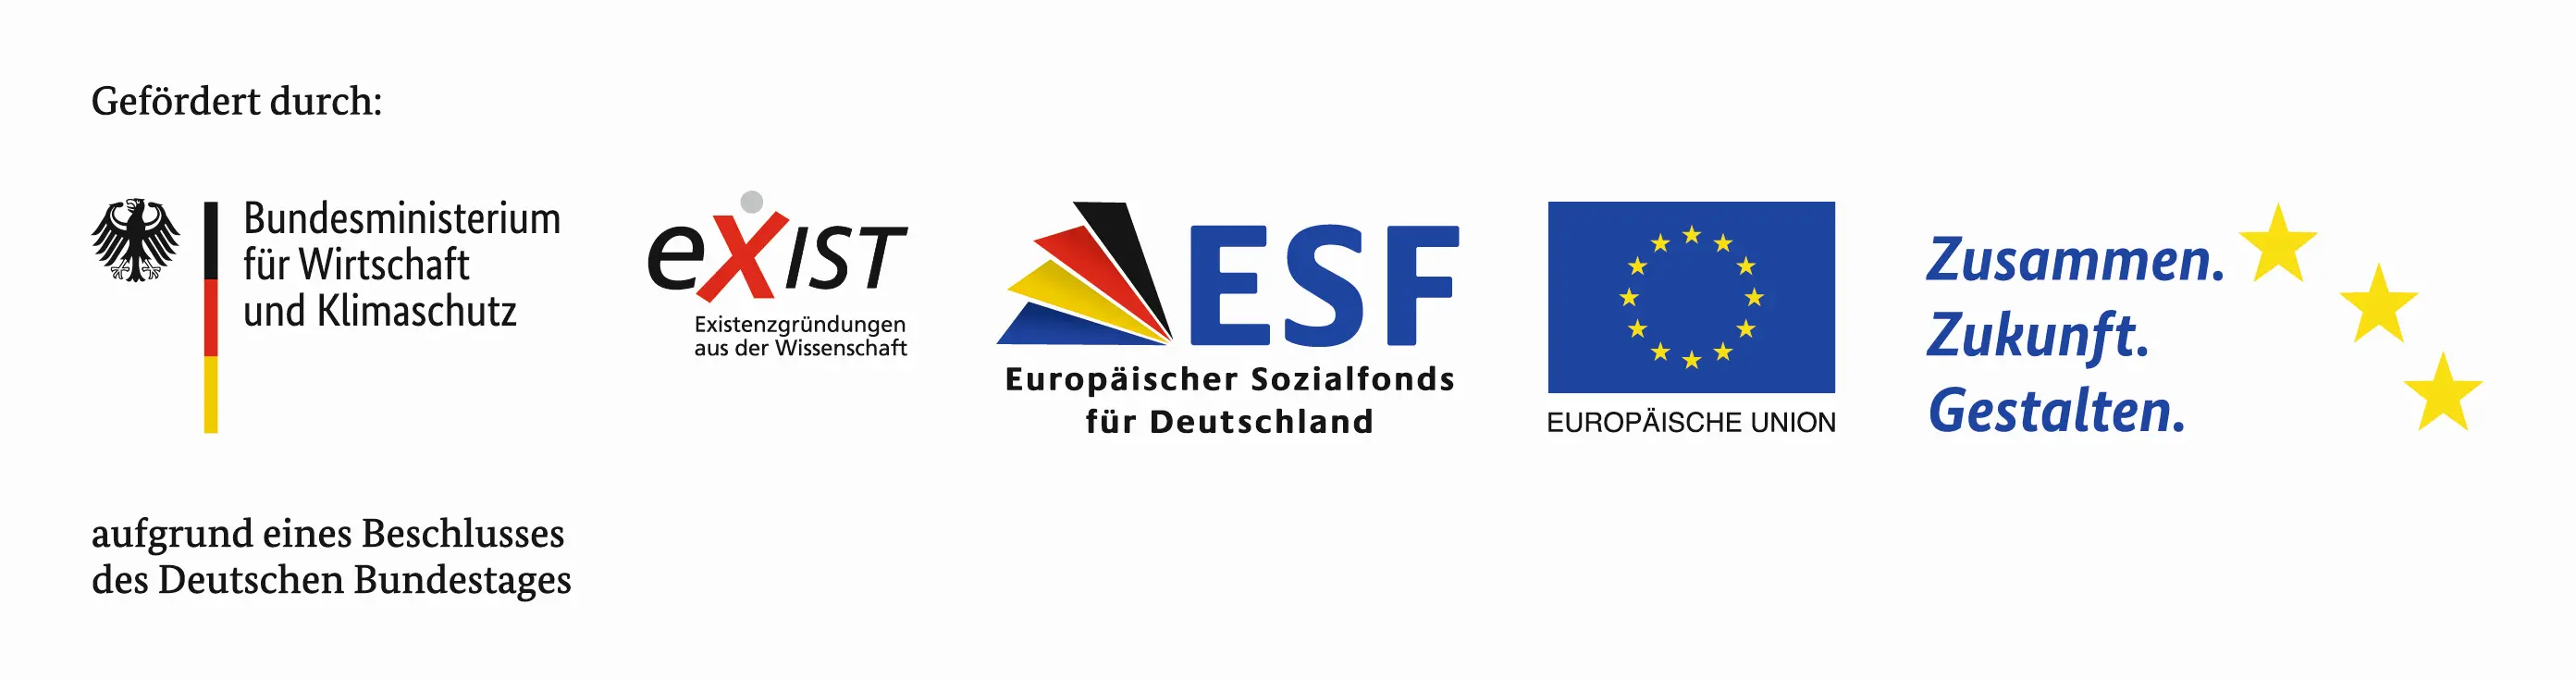 Logos der Bundesagentur für Wirtschaft und Klimatschutz, Exist, ESF und der Europäische Union